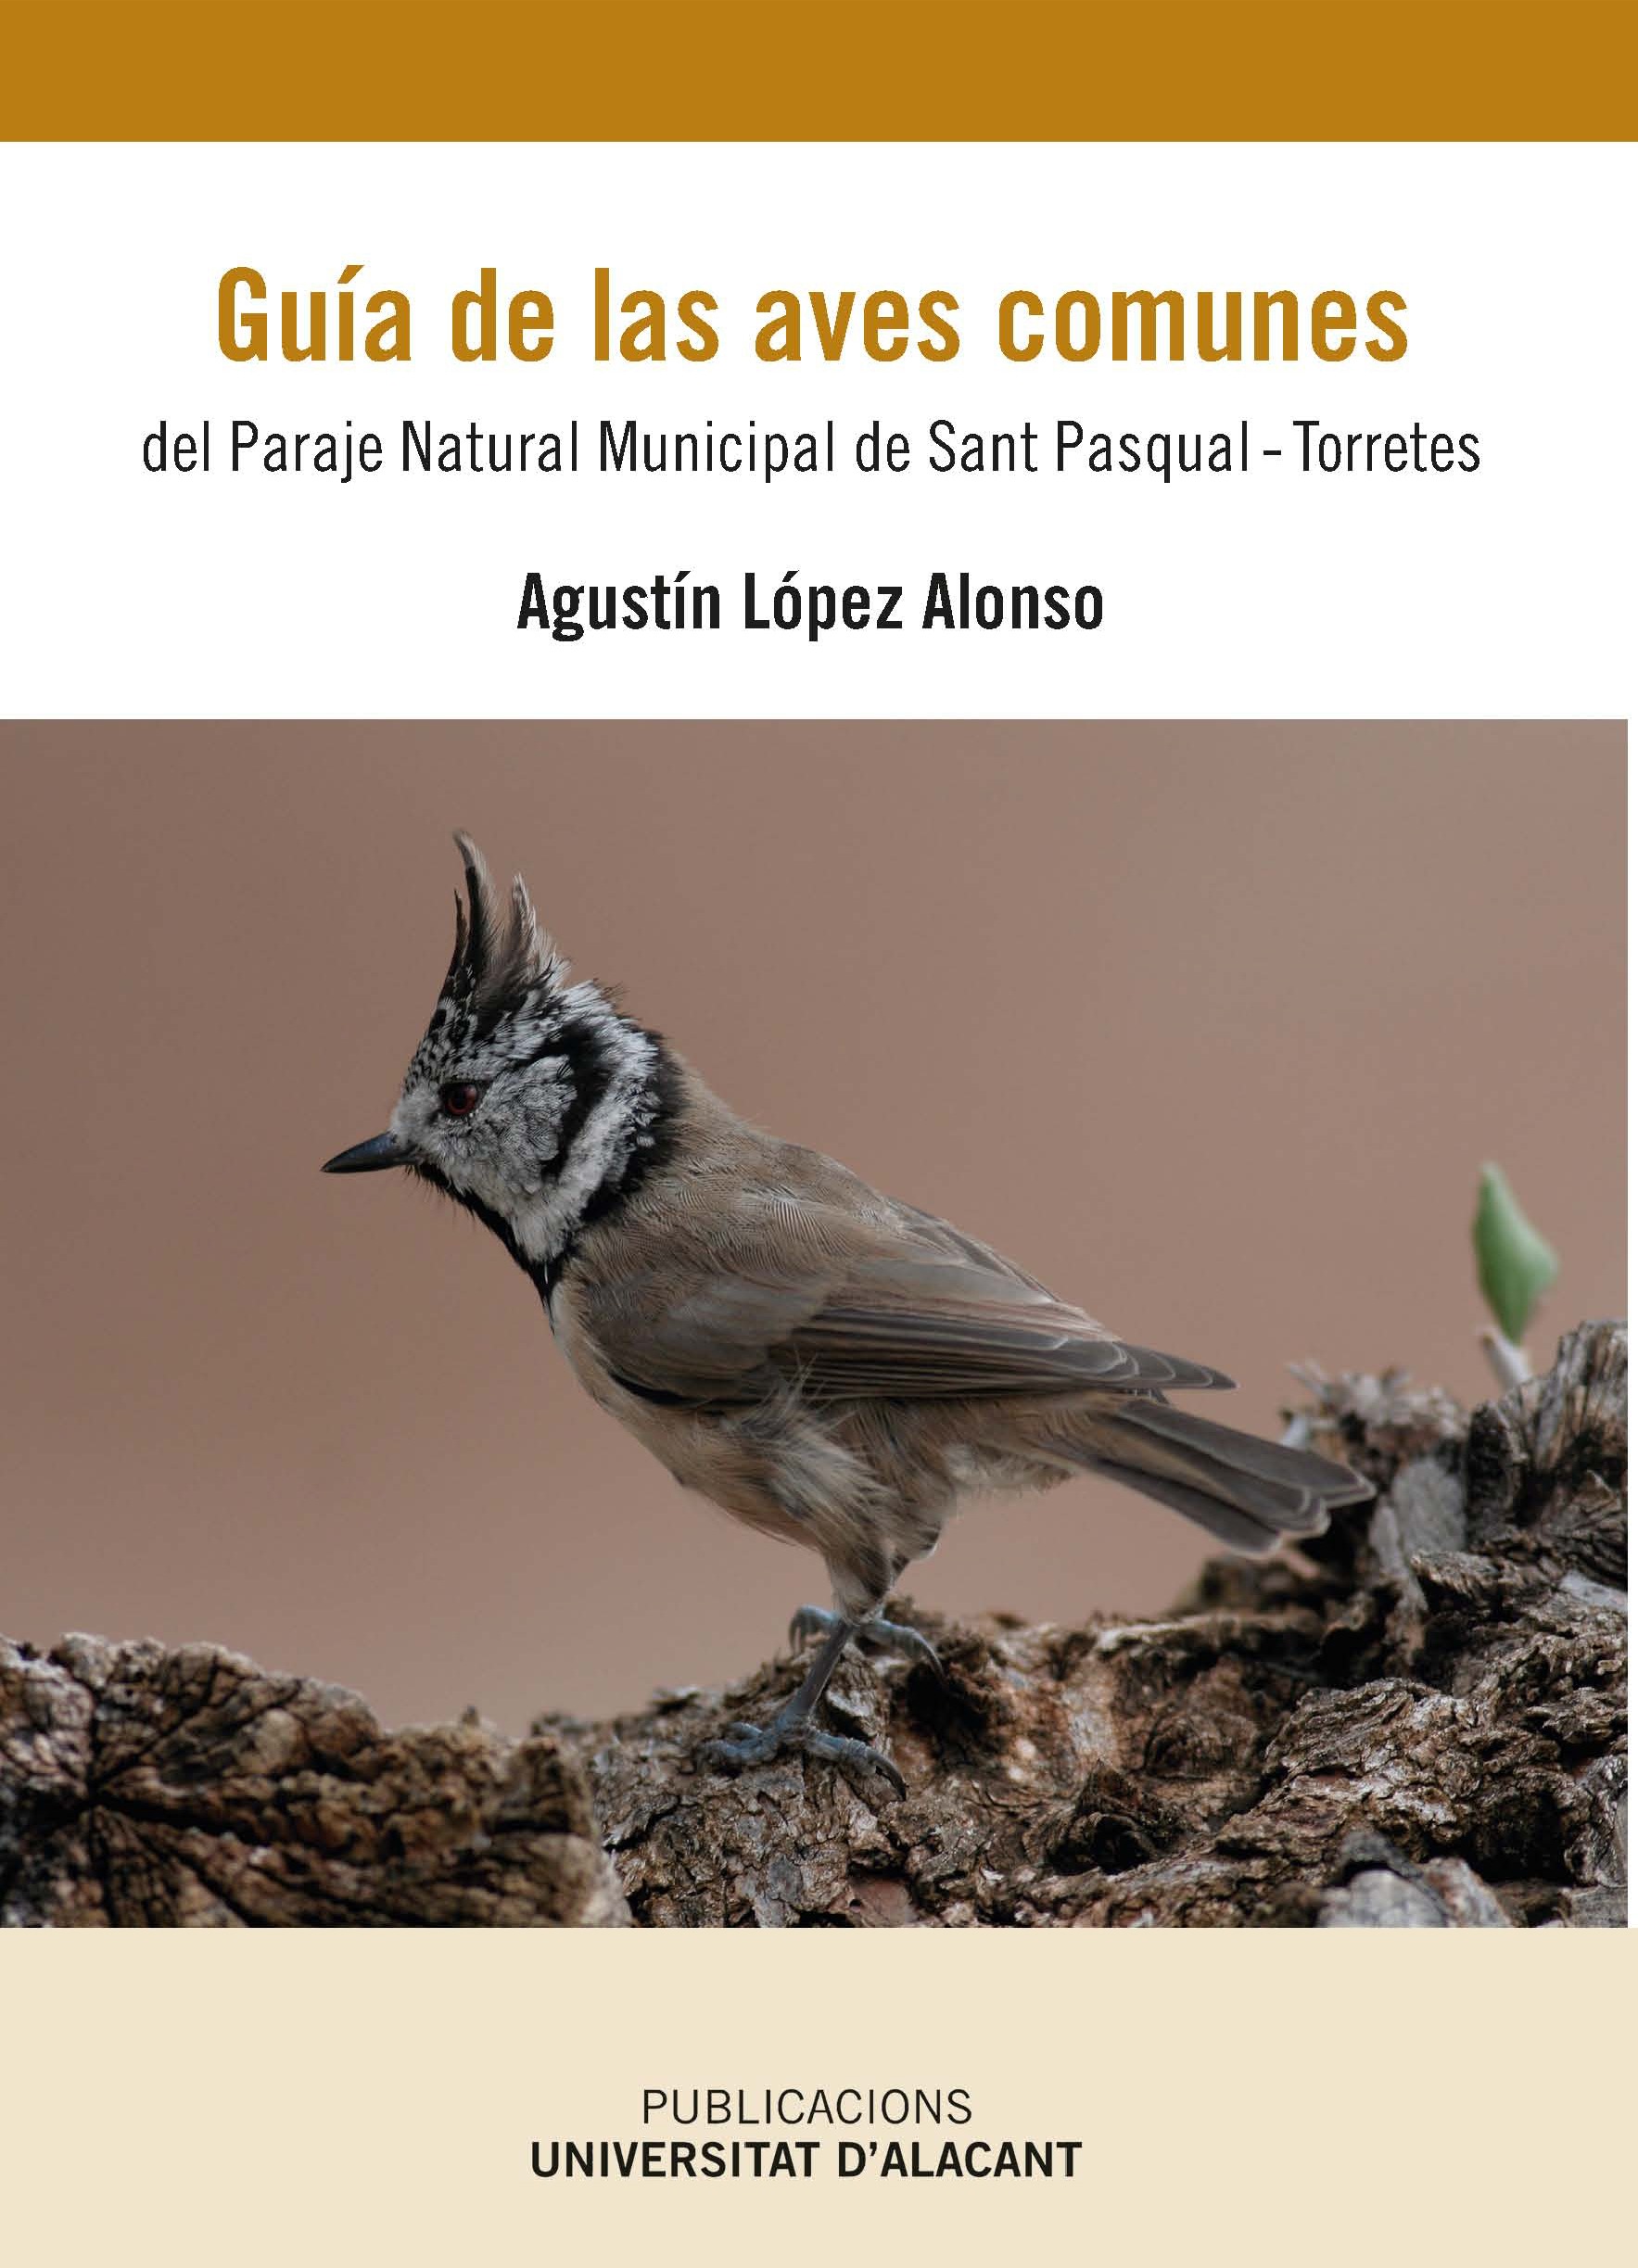 GuÃ­a de las aves comunes del Paraje Natural Municipal de San Pascual-Torretes.